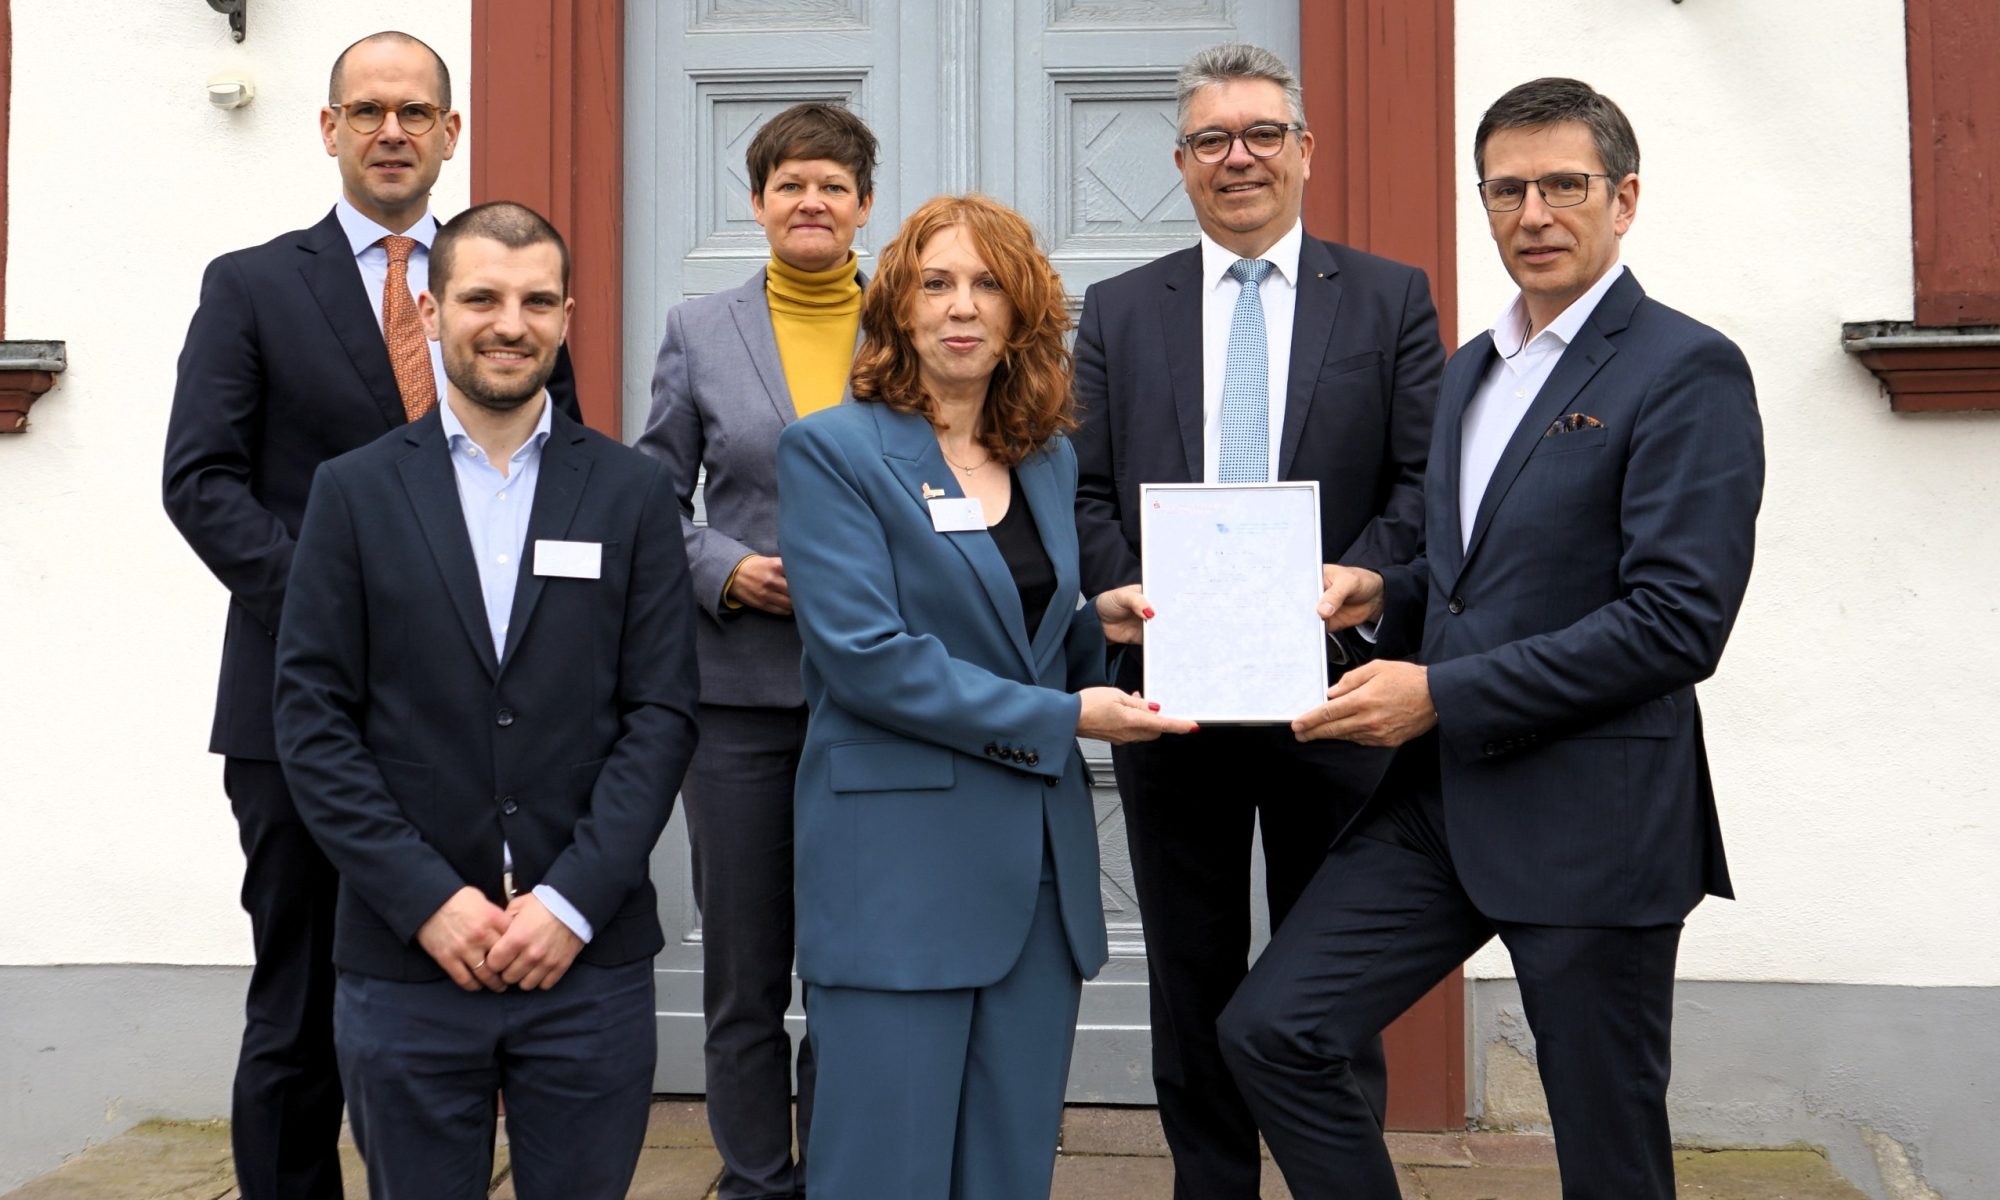 Verleihung des hessischen Archivpreises an die Oranienstadt Dillenburg. Mit Klick aufs Bild gehts zum ganzen Artikel